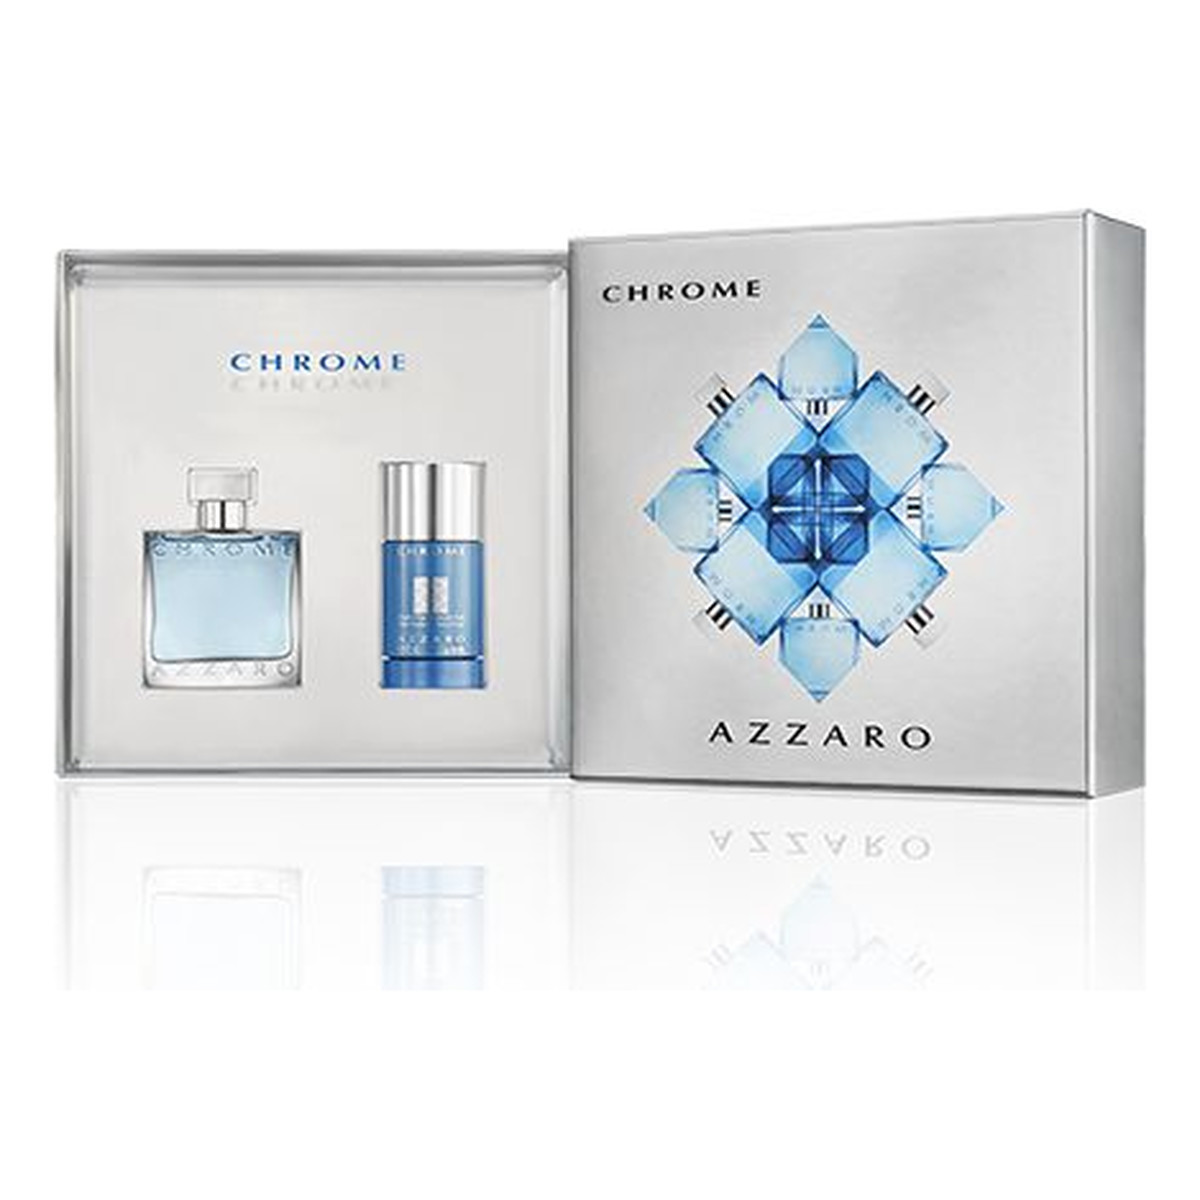 Azzaro Chrome Zestaw woda toaletowa + Deostick 75ml